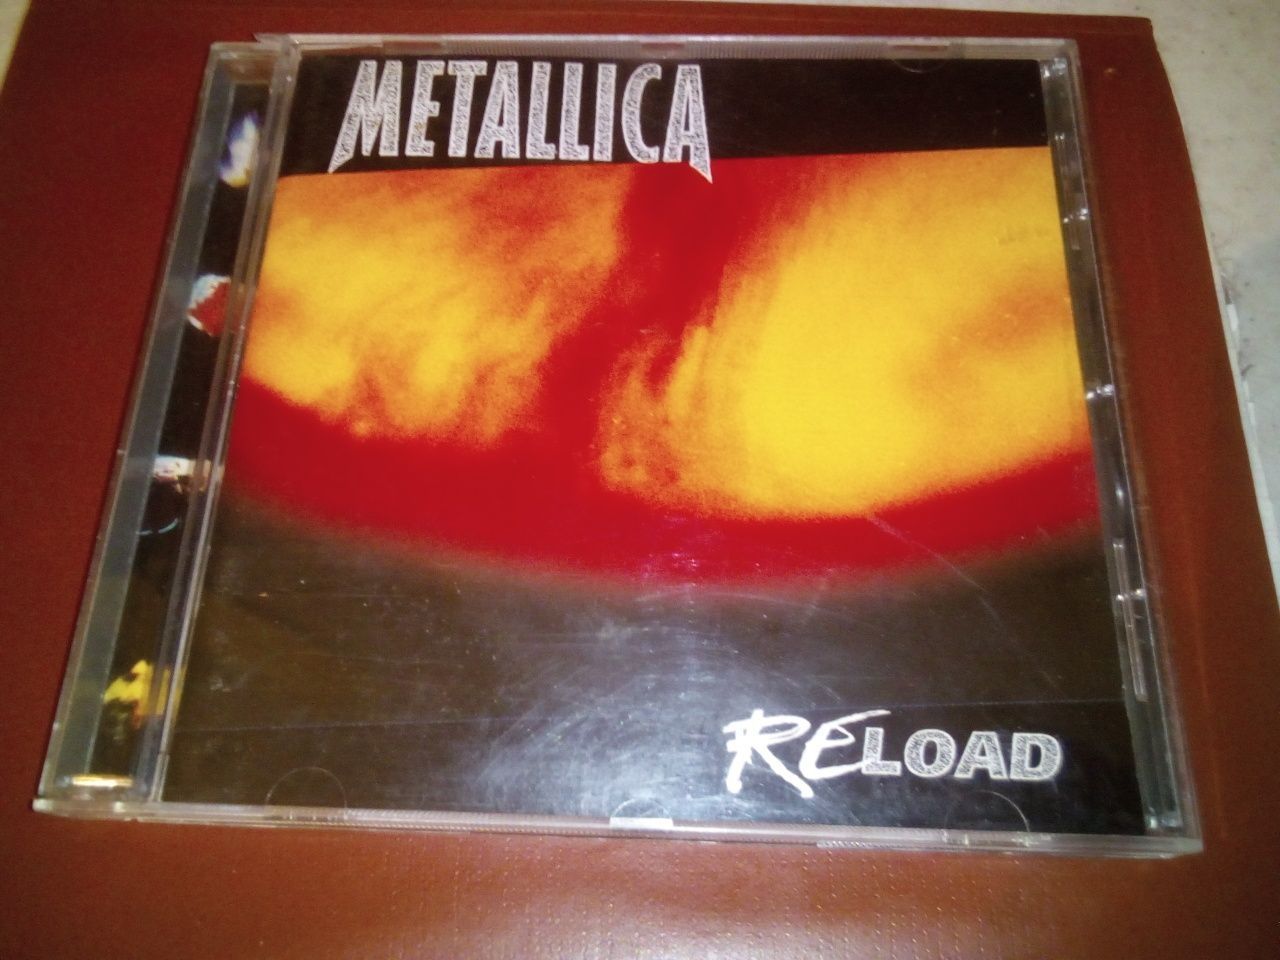 Лицензийный CD диск гр.Metallica